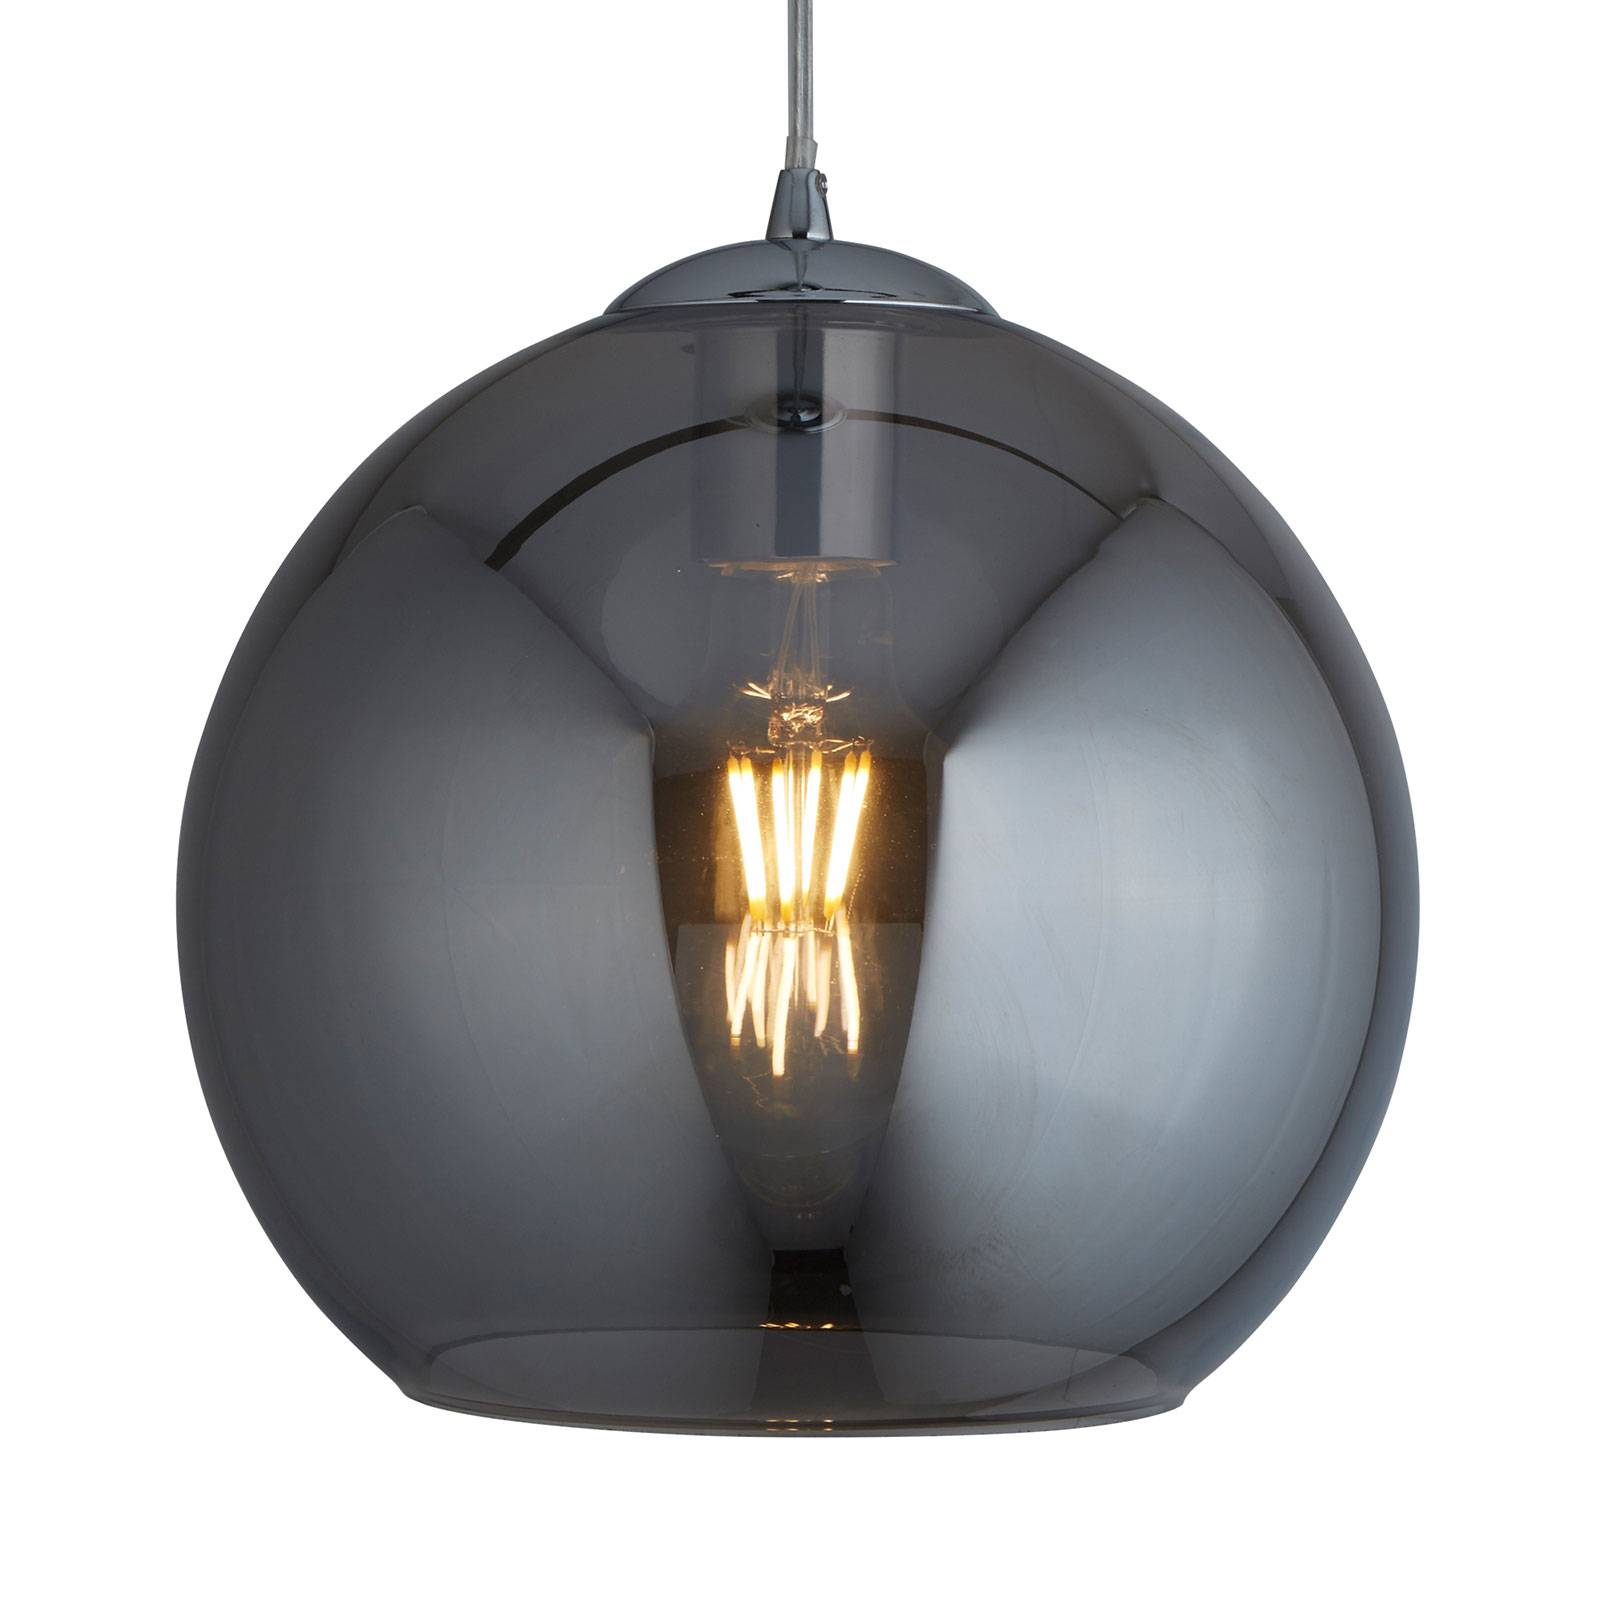 Lampa wisząca Balls, kulki szklane szare, Ø 30cm